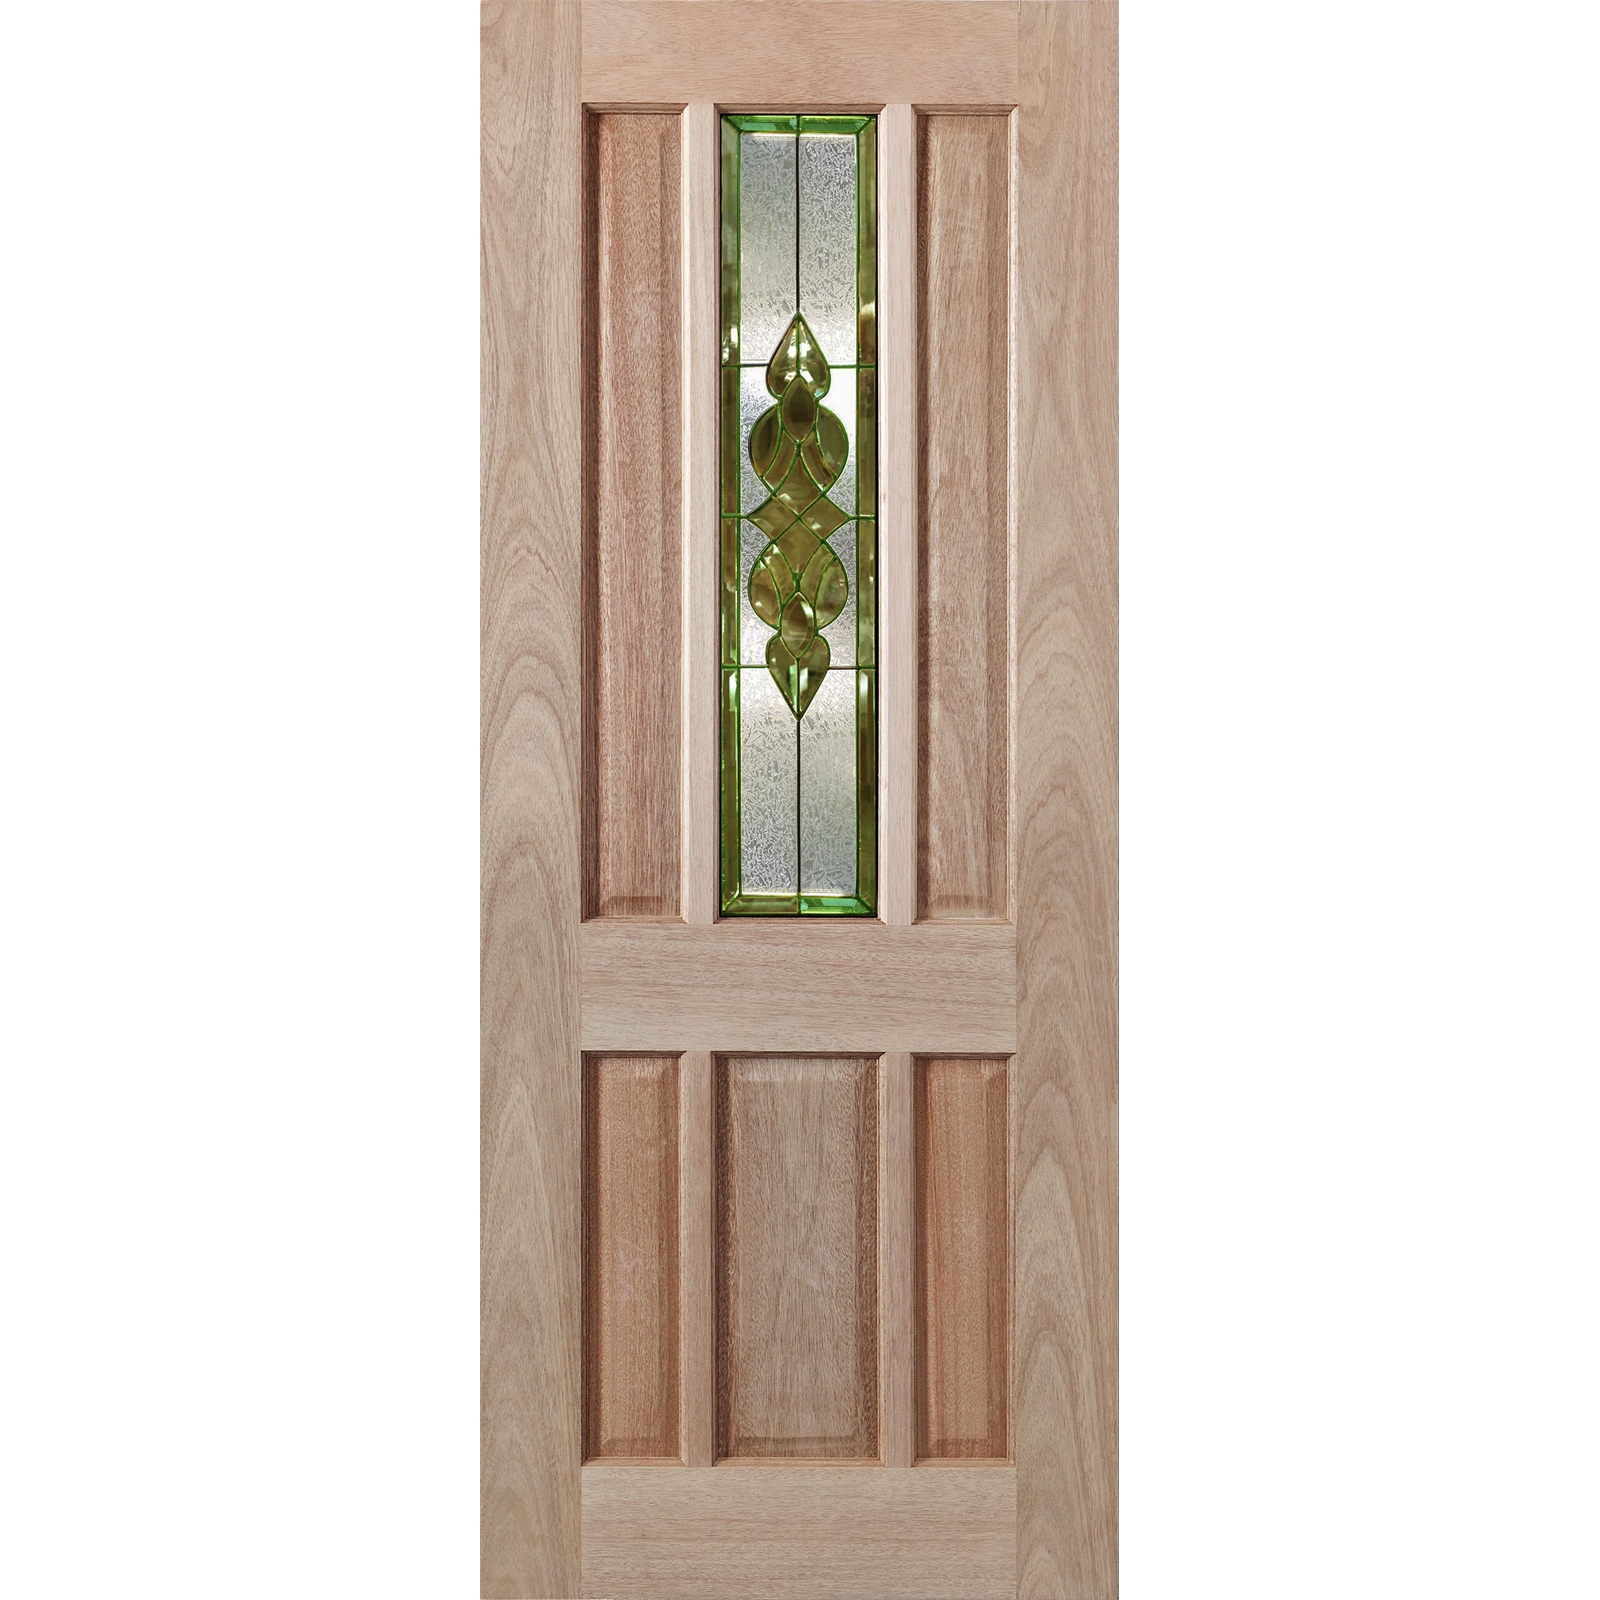 Woodcraft Doors 2040 x 820 x 40mm Hamlett Entrance Door With Gold Bevelled Mirror Glass